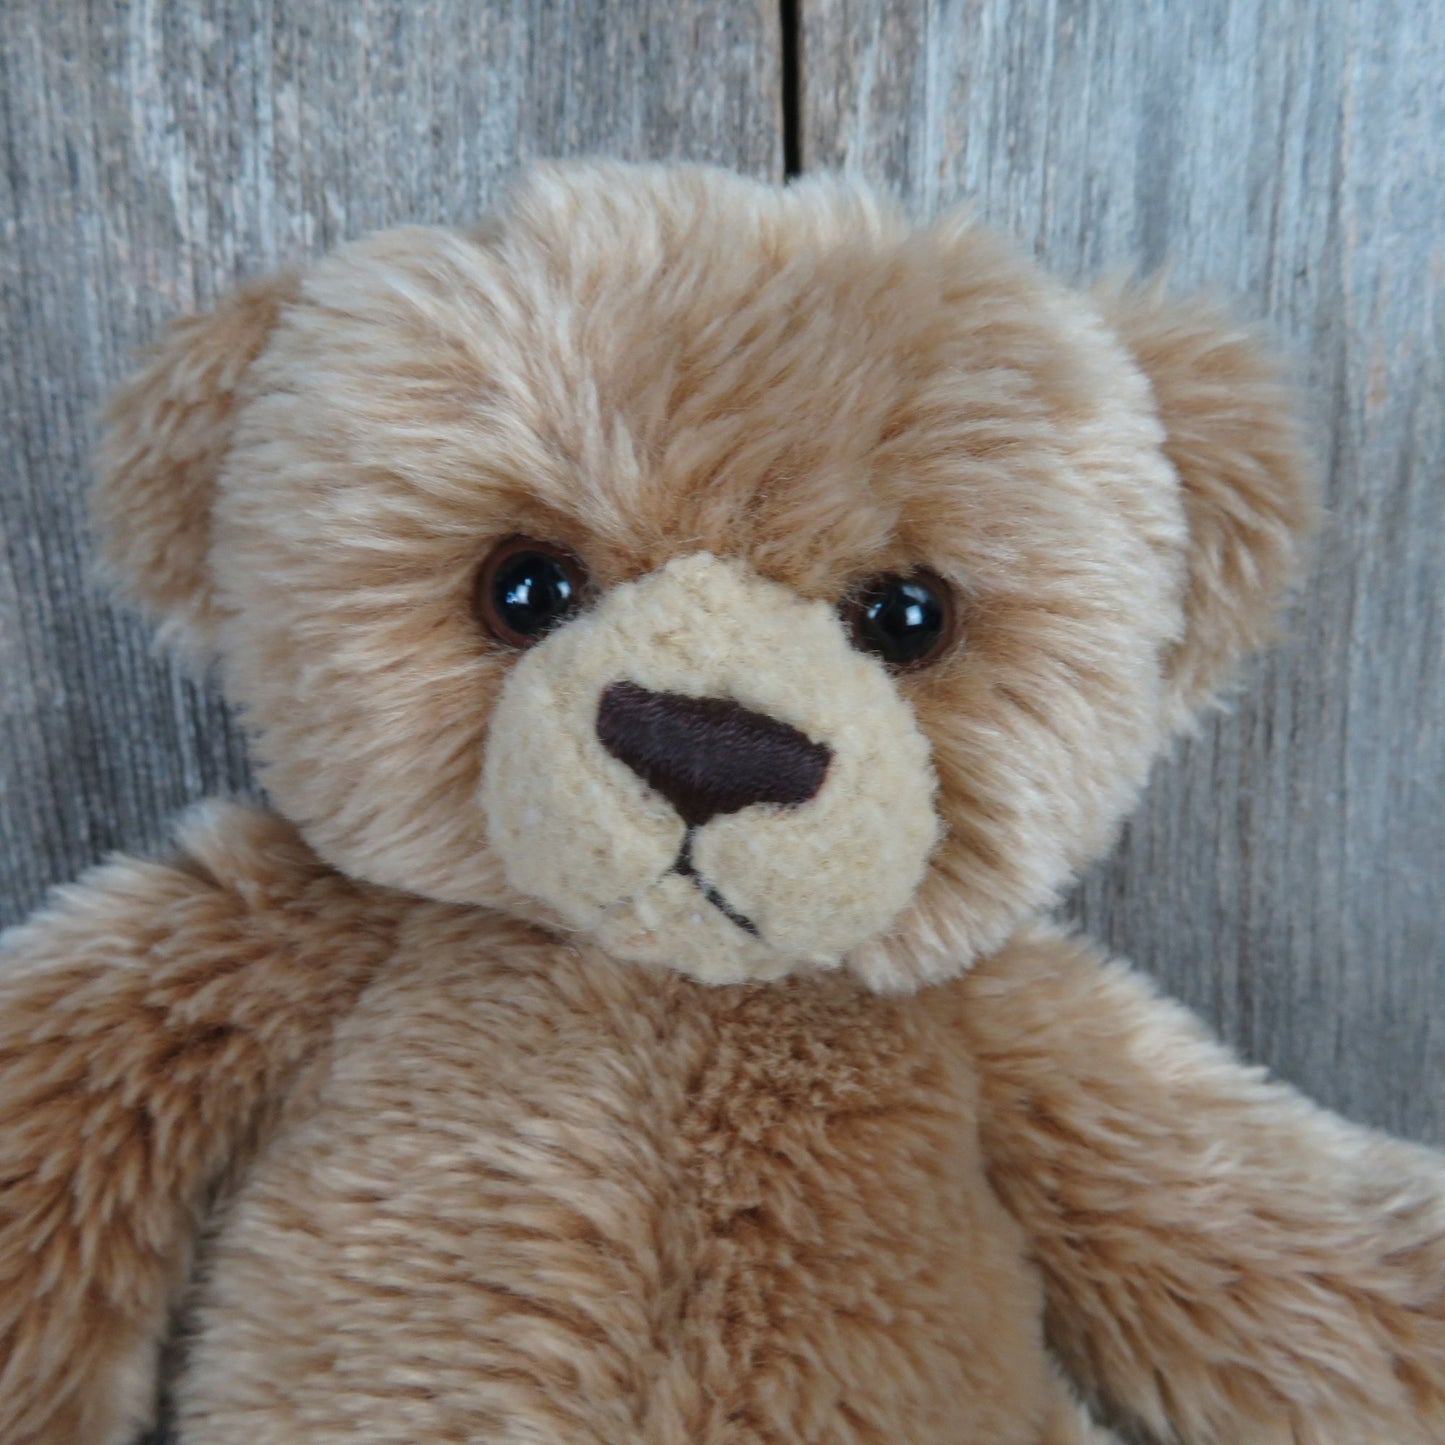 Vintage Teddy Bear Shaggy Plush Cute Floppy Aurora Stuffed Animal Stitched Nose Sad Grumpy